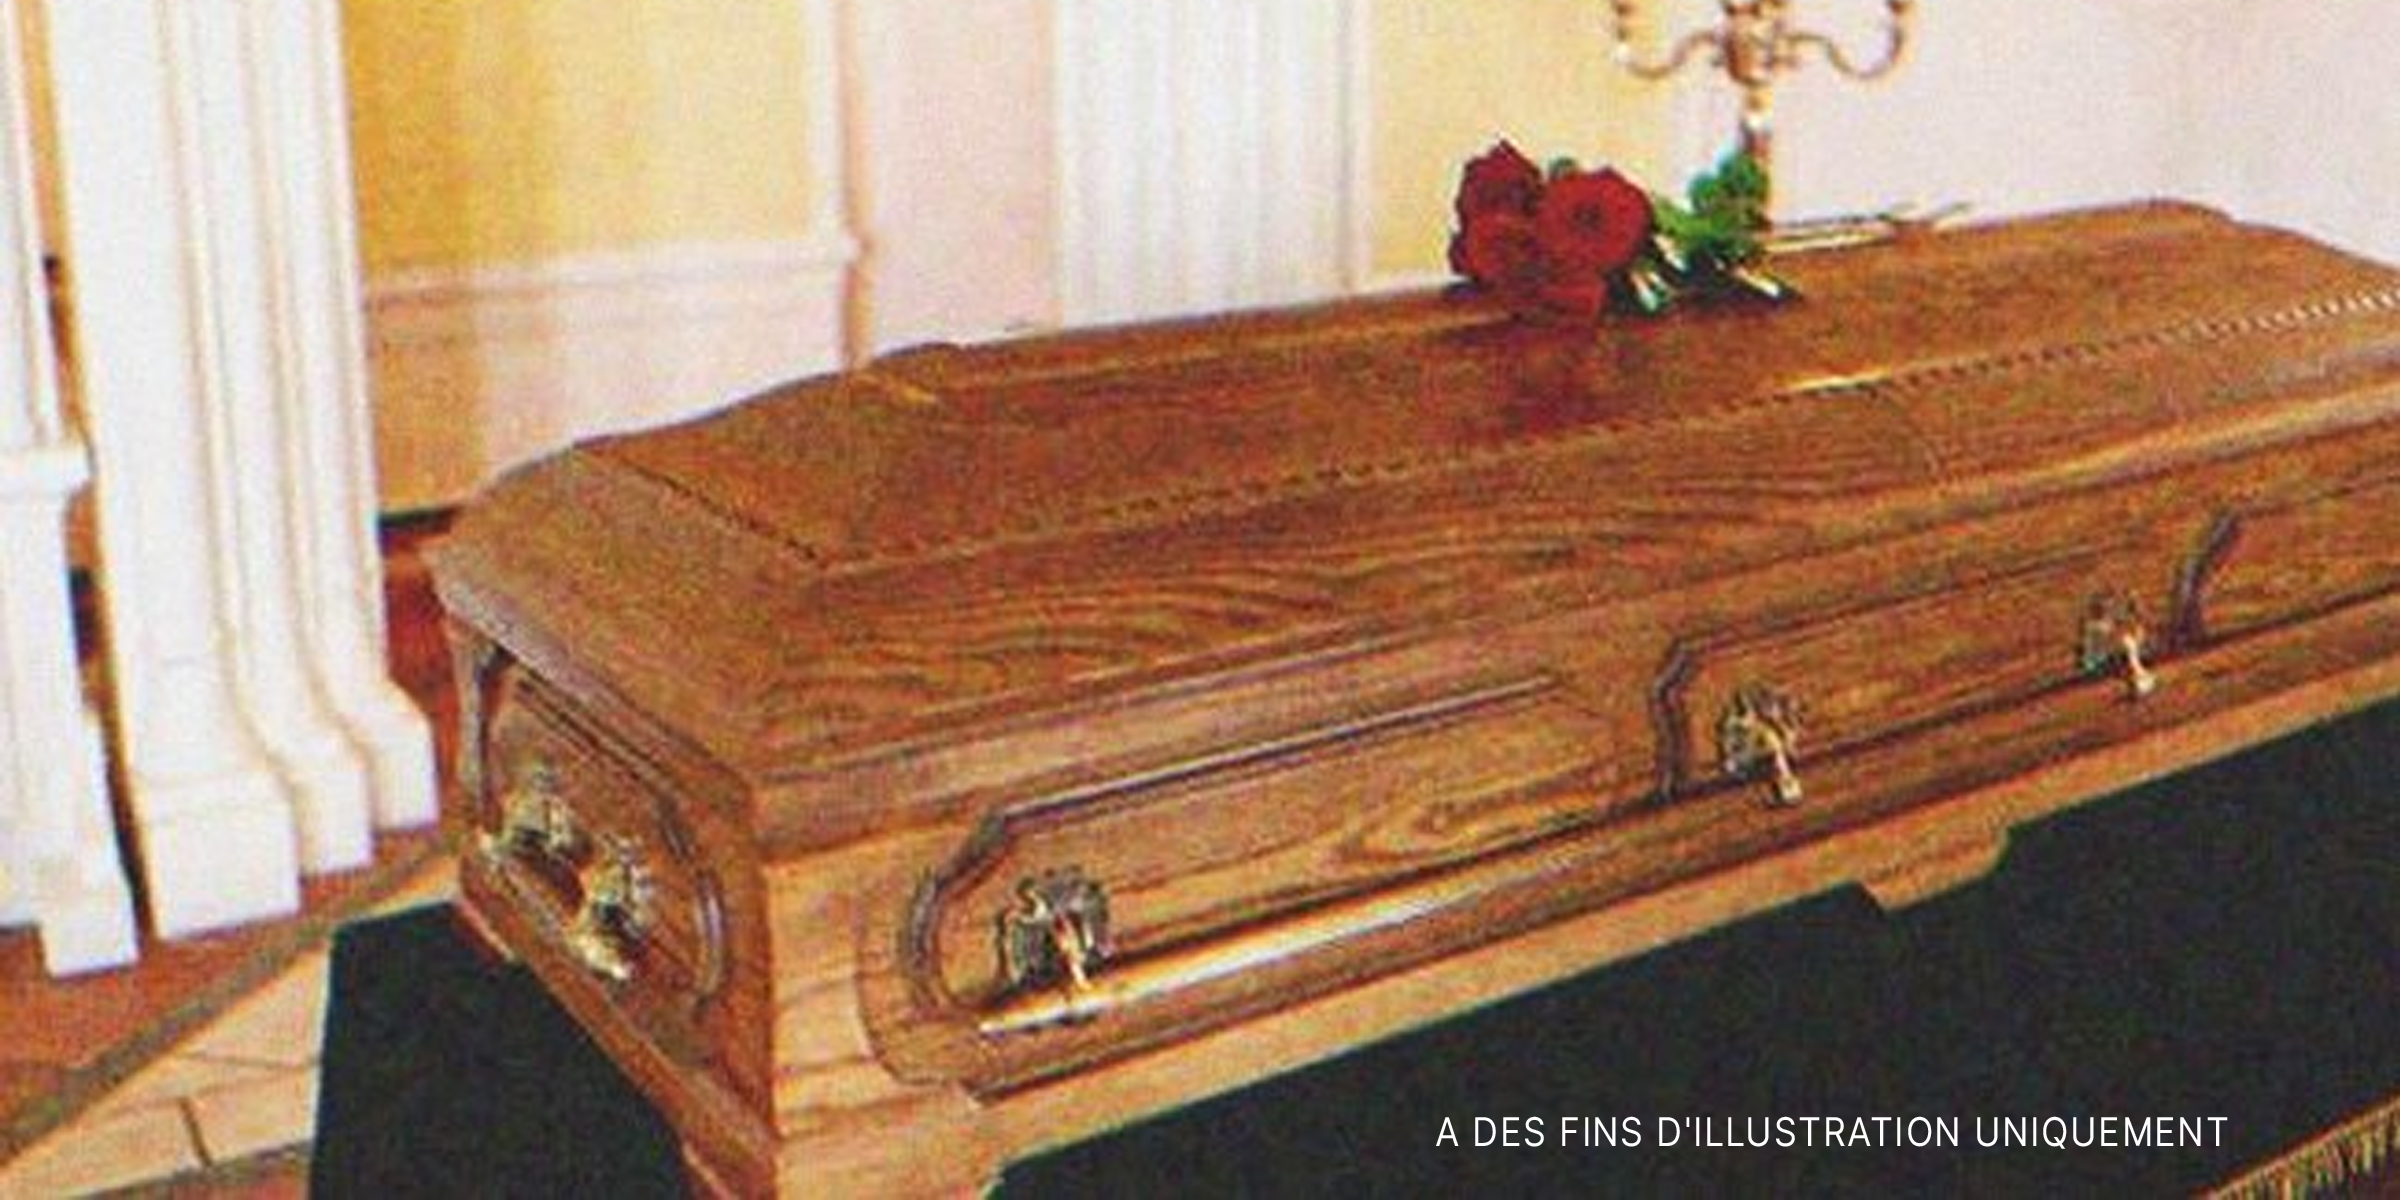 Un cercueil surmonté d'une rose | Source : Shutterstock